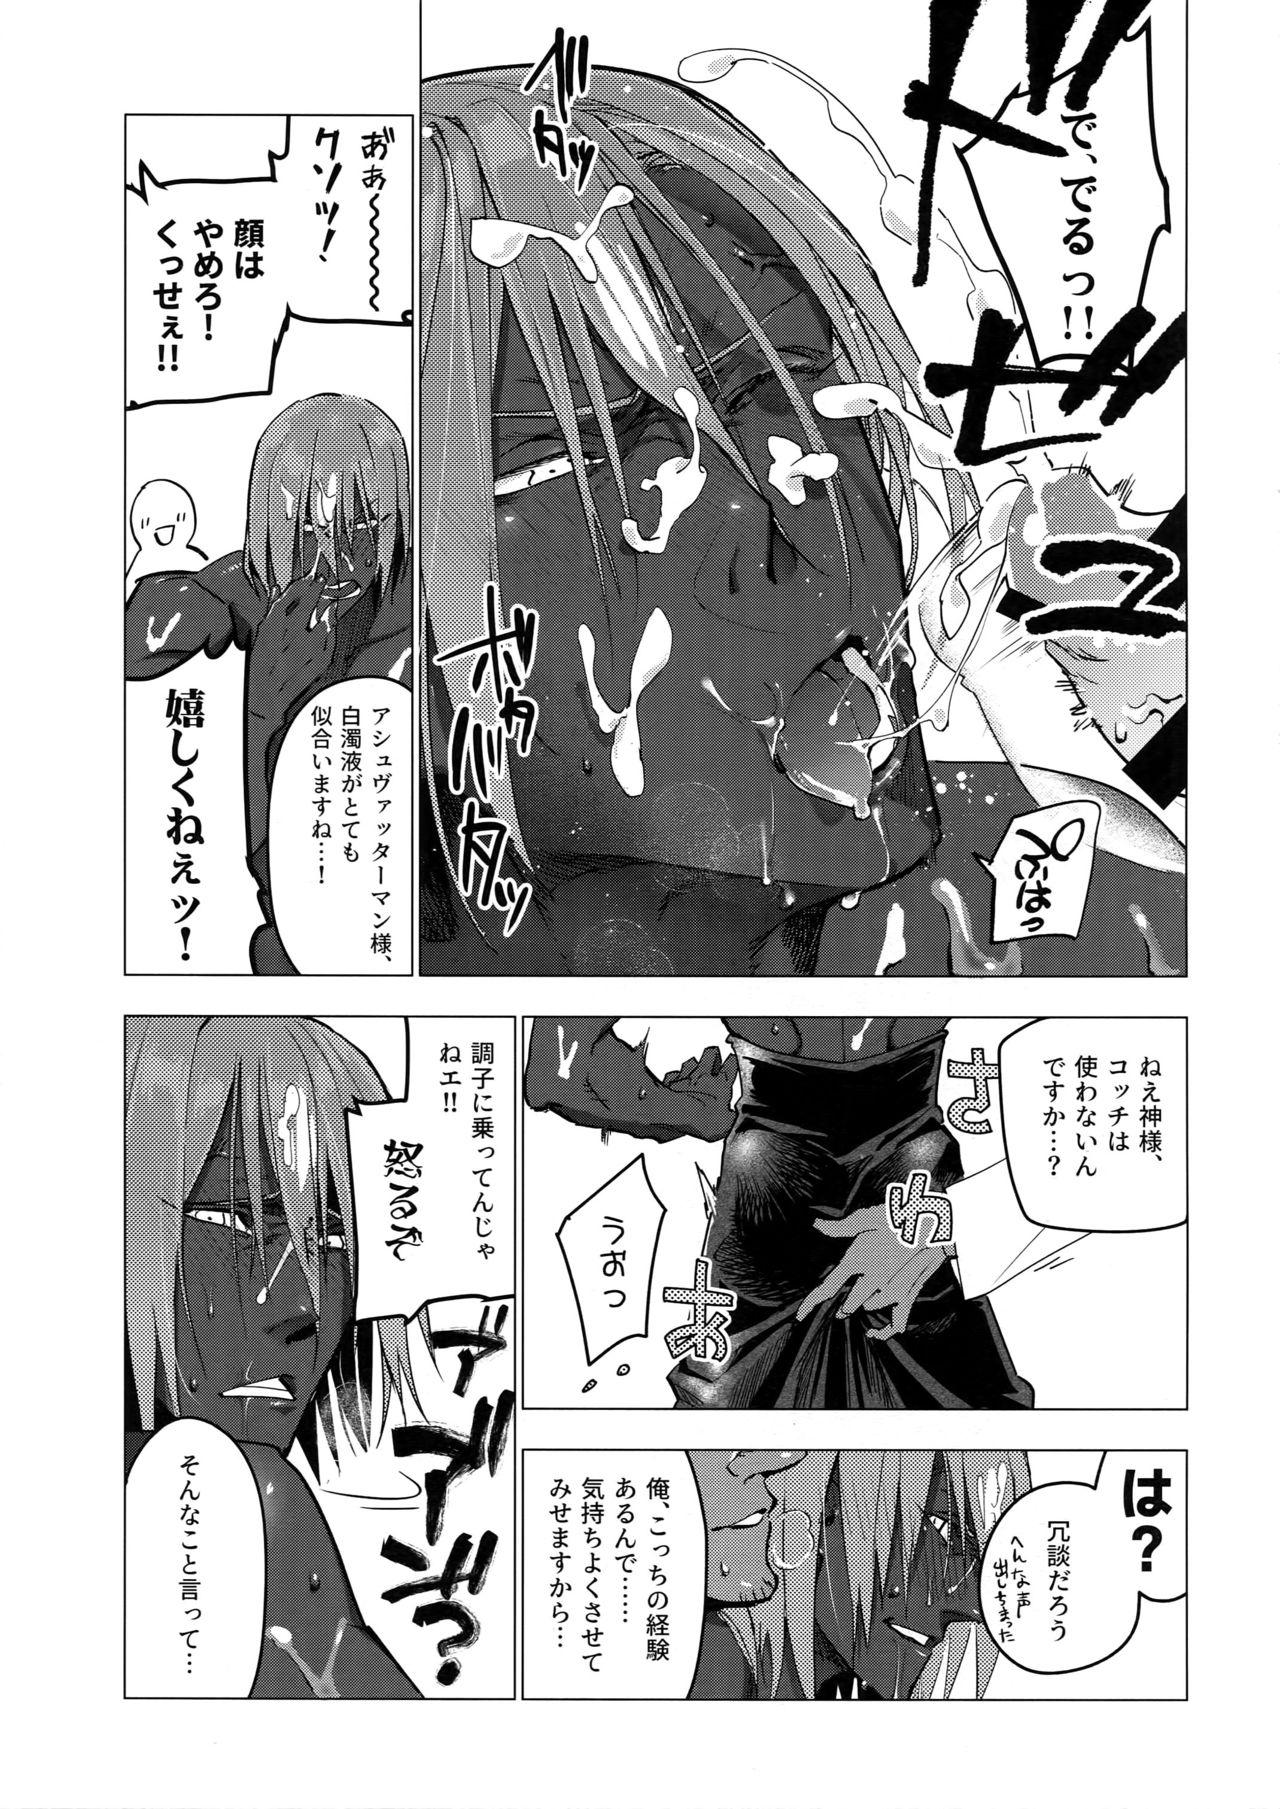 Chacal Kami-sama ni Bukkakeruto Kodakusan tte Honto desu ka! - Fate grand order Boquete - Page 8